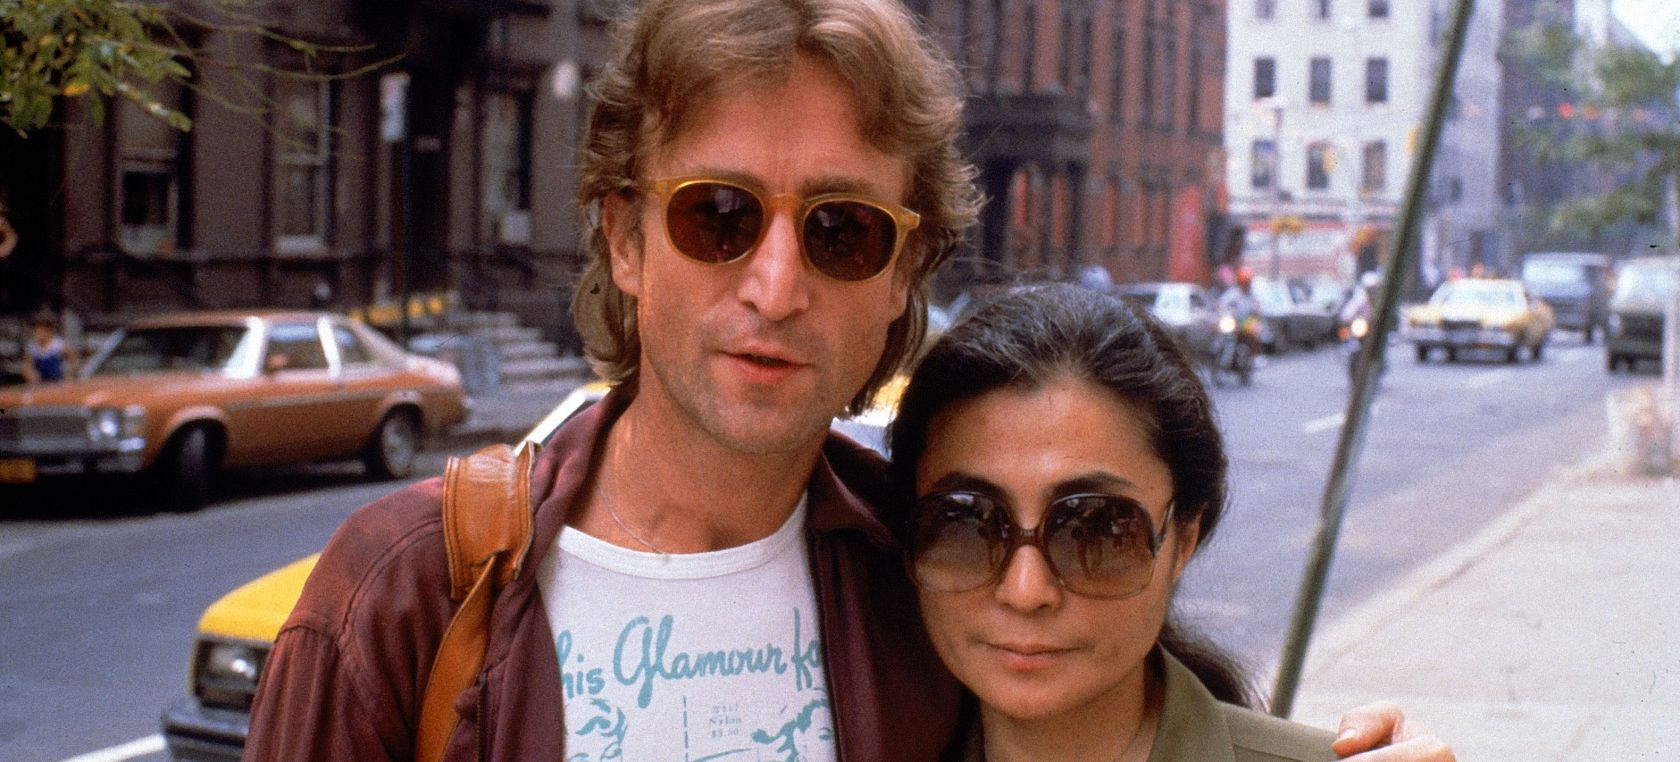 John Lennon y ese 8 de diciembre que podía haber sido el día más feliz de su vida